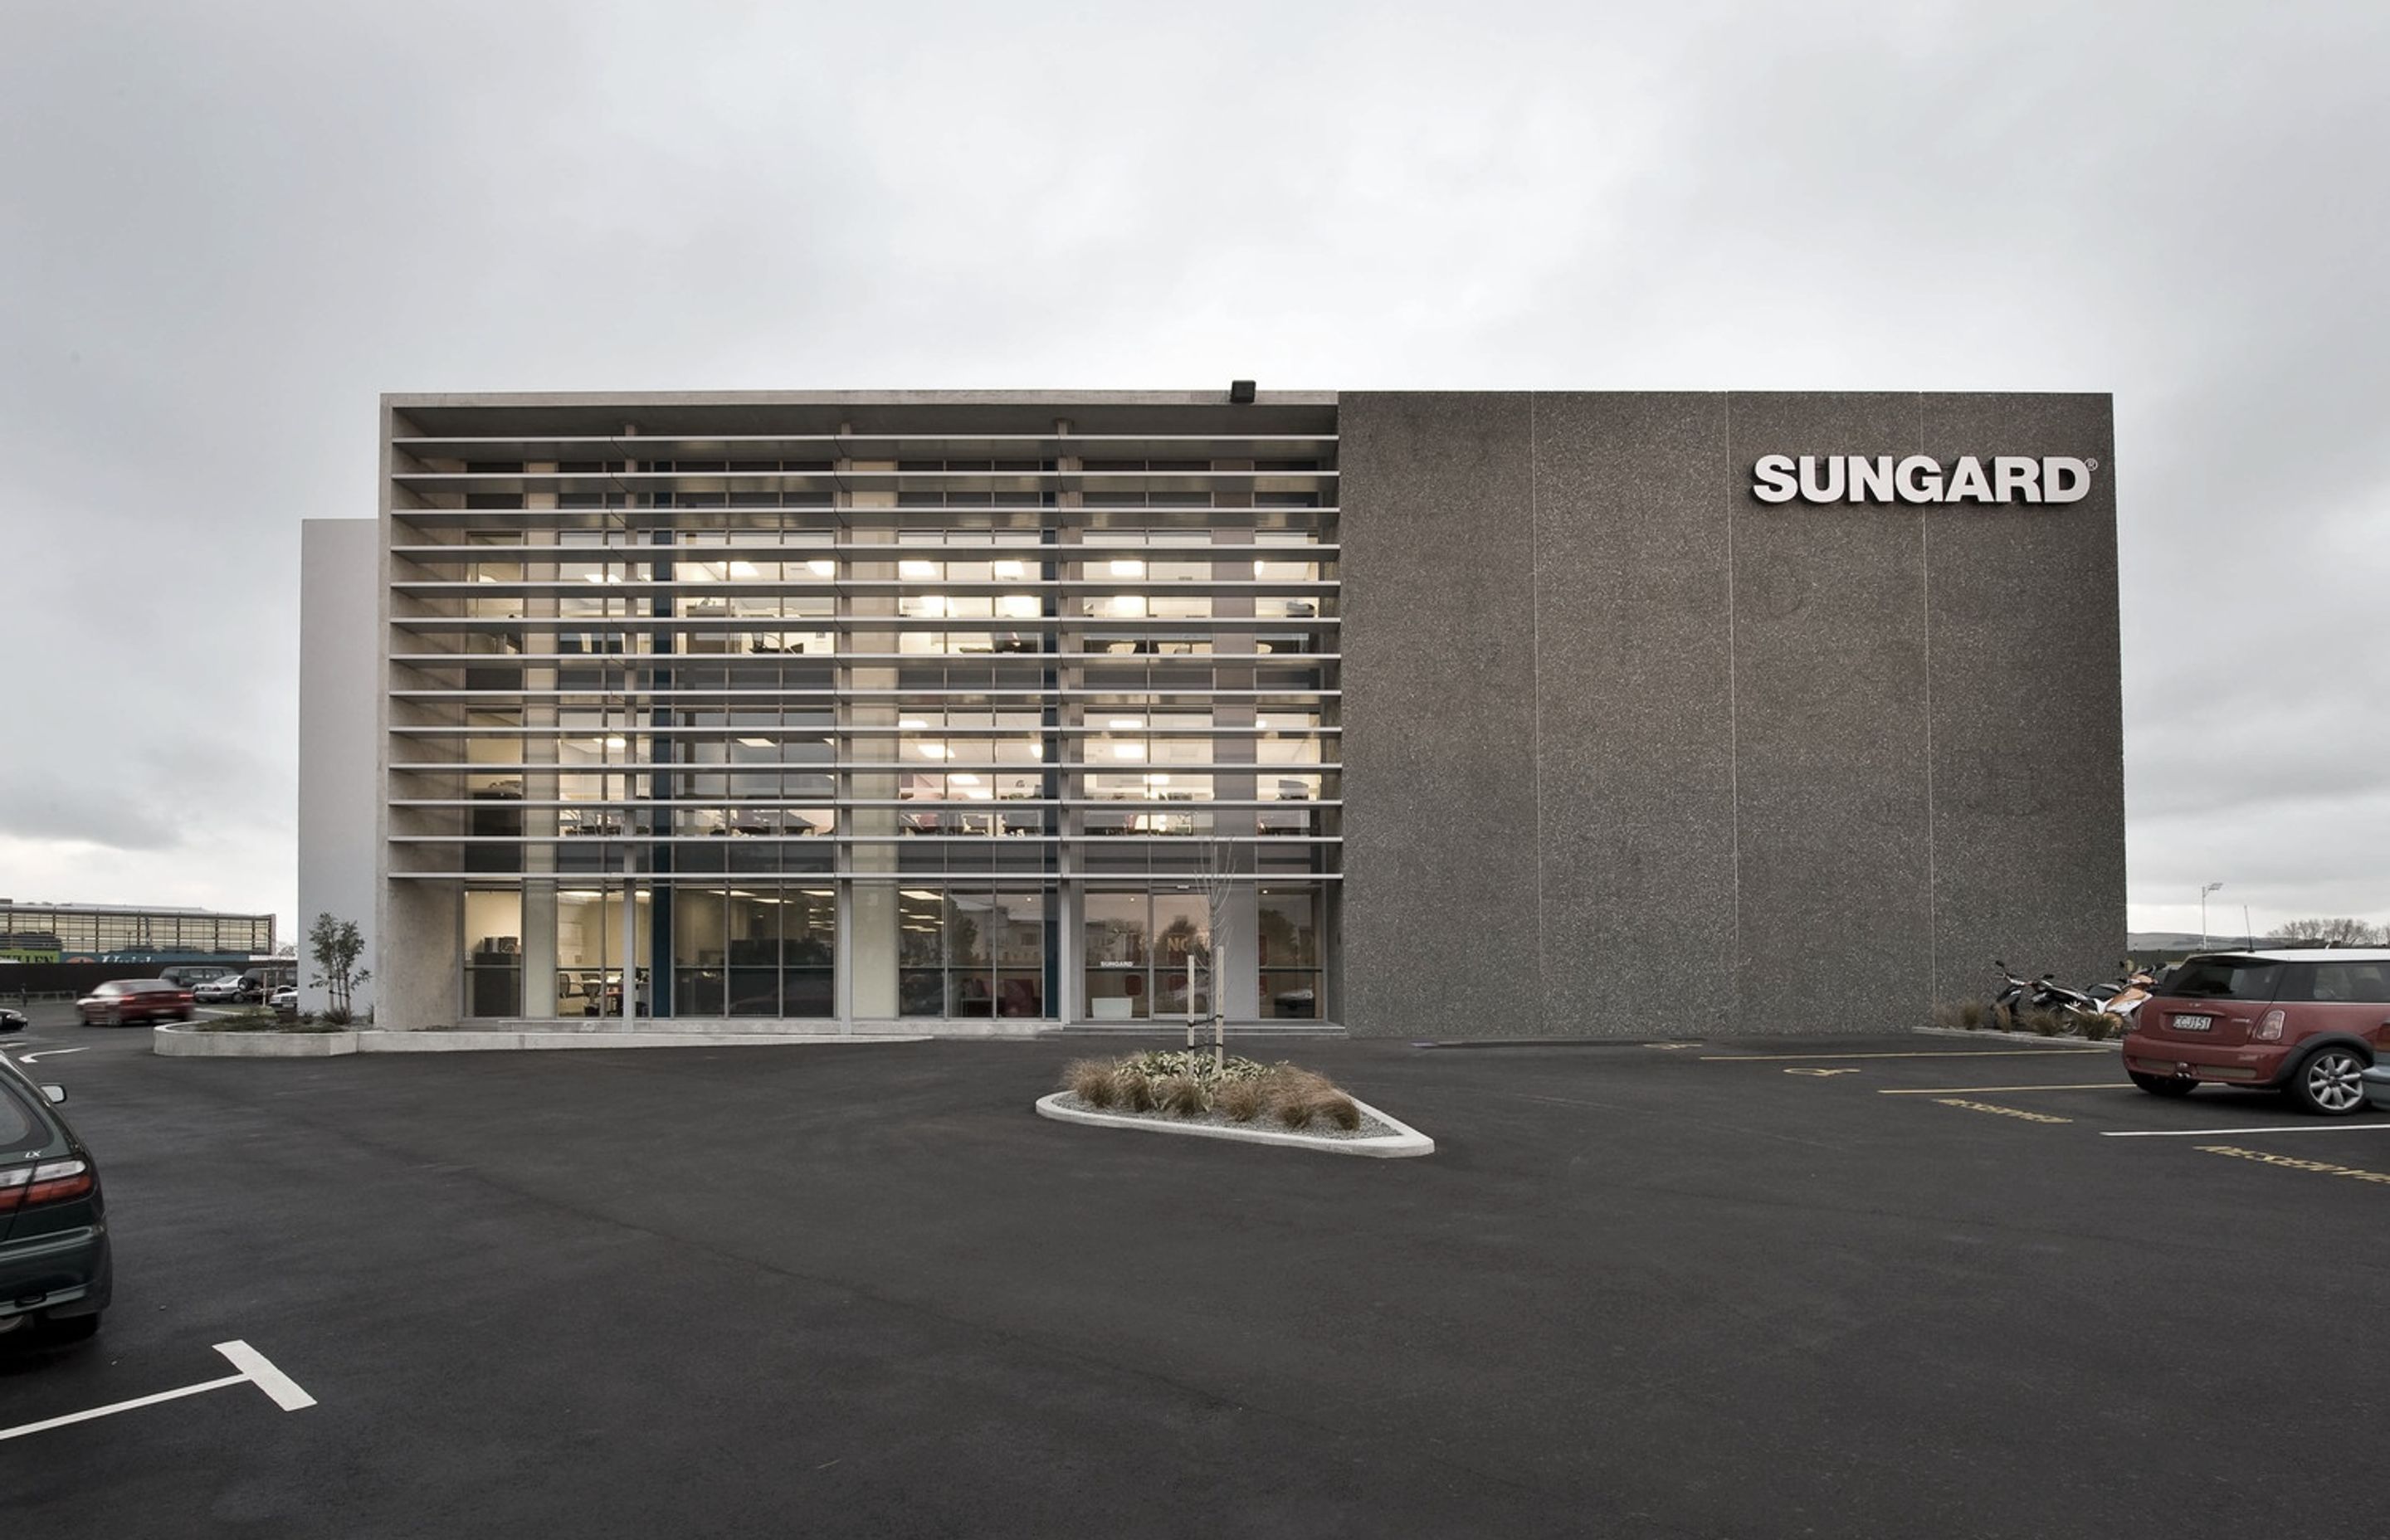 SUNGARD OFFICE BUILDING